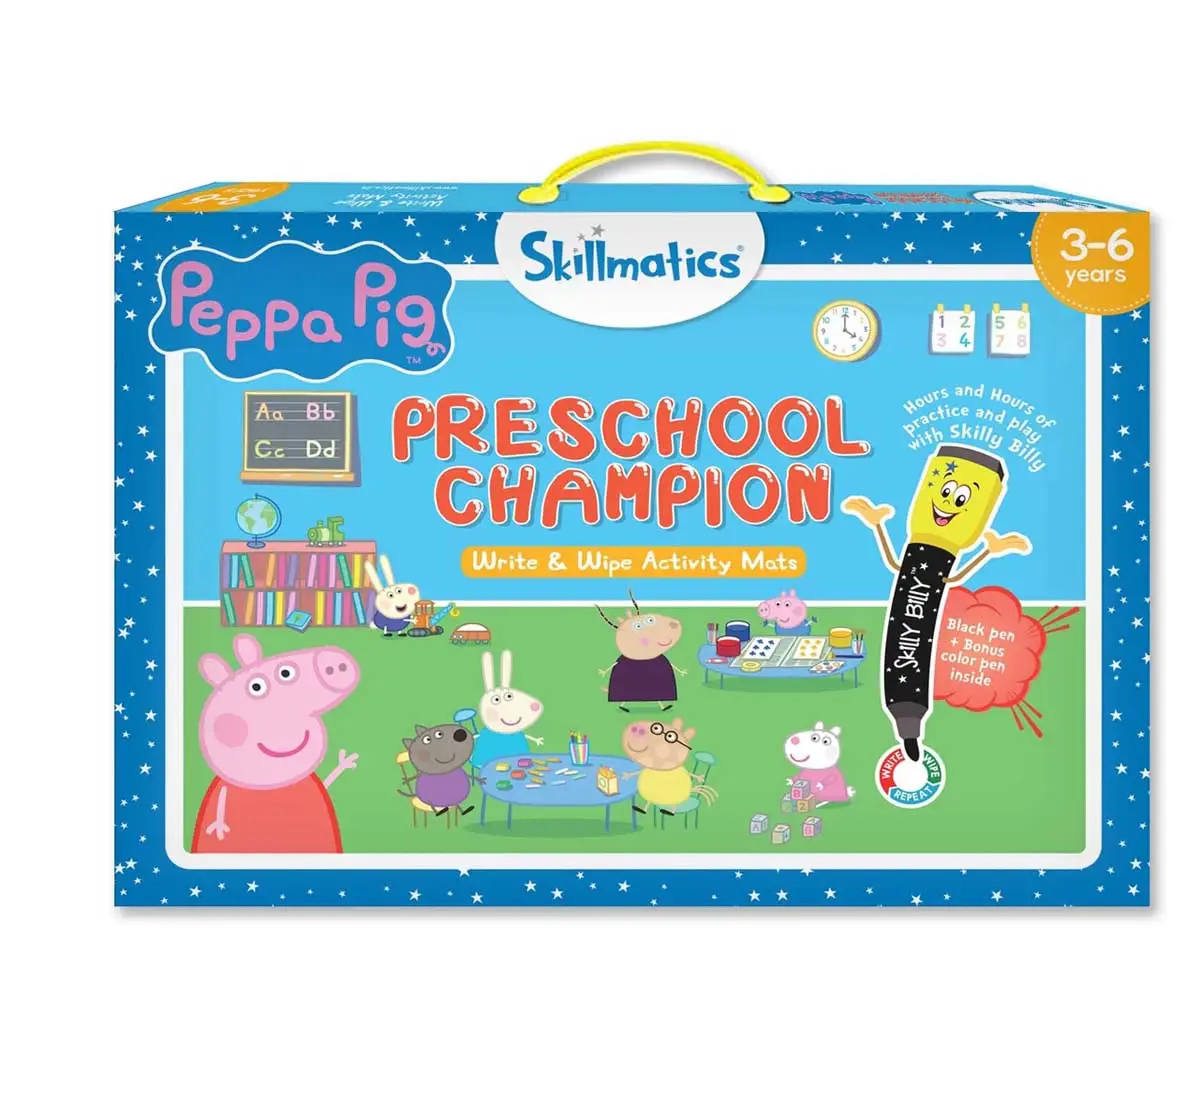 Skillmatics Peppa Preschool Champion Activity Game for Kids 3Y+, Multicolour